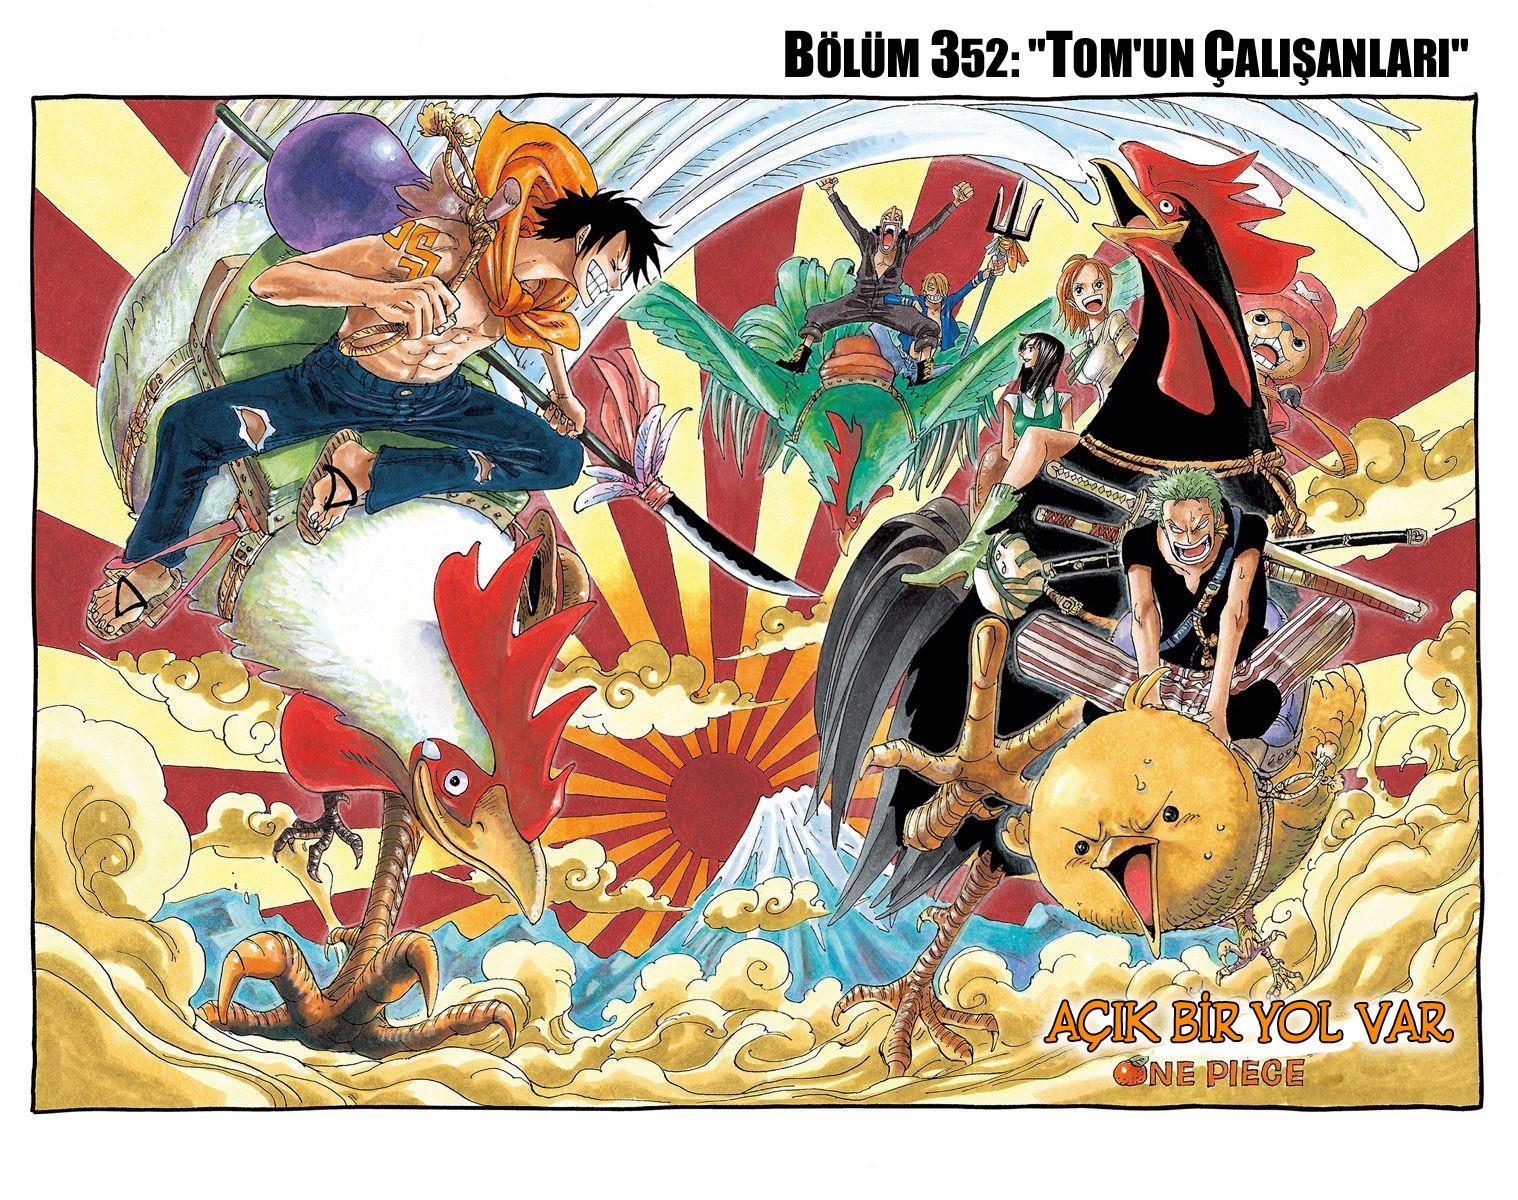 One Piece [Renkli] mangasının 0352 bölümünün 2. sayfasını okuyorsunuz.